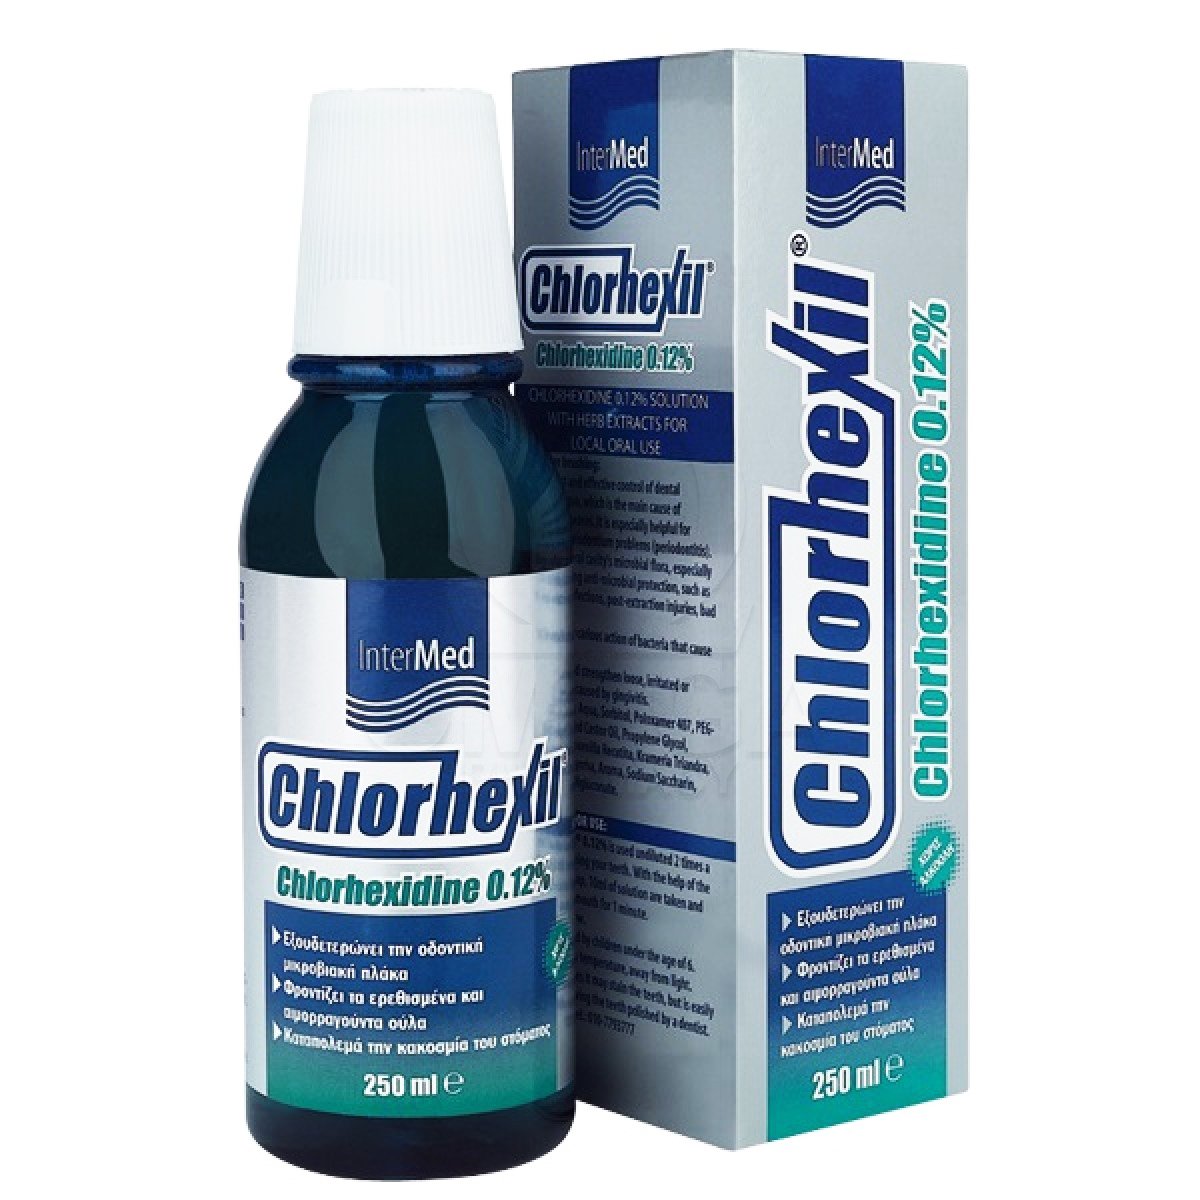 Chlorhexil Chlorhexil 0.12% Mouthwash Στοματικό Διάλυμα για τον Έλεγχο & την Εξουδετέρωση των Μικροοργανισμών στη Στοματική Κοιλότητα 250ml